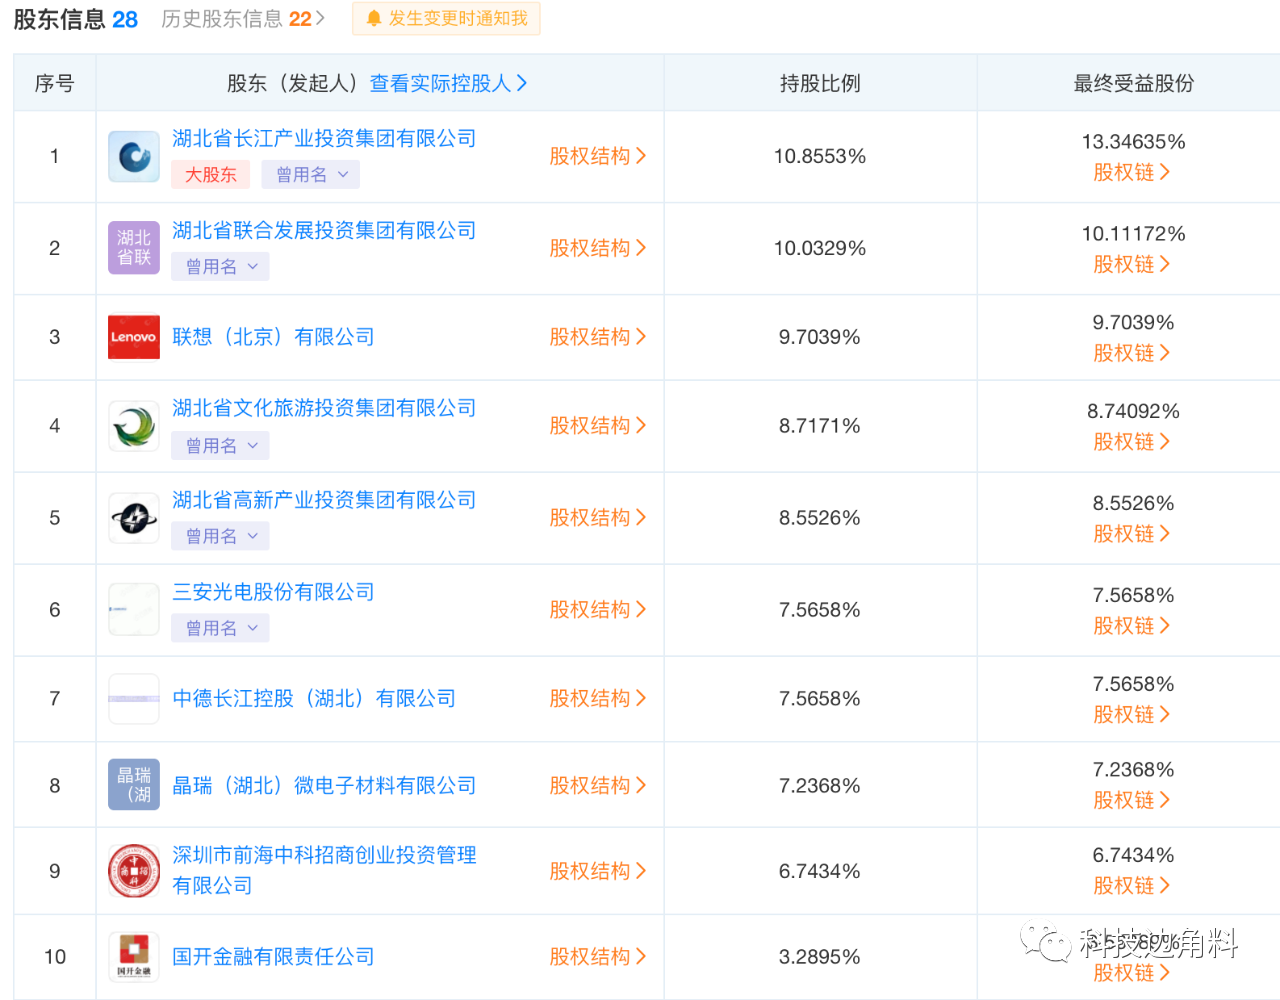 联想投资湖北长江经济带产业基金 持股9.7039%